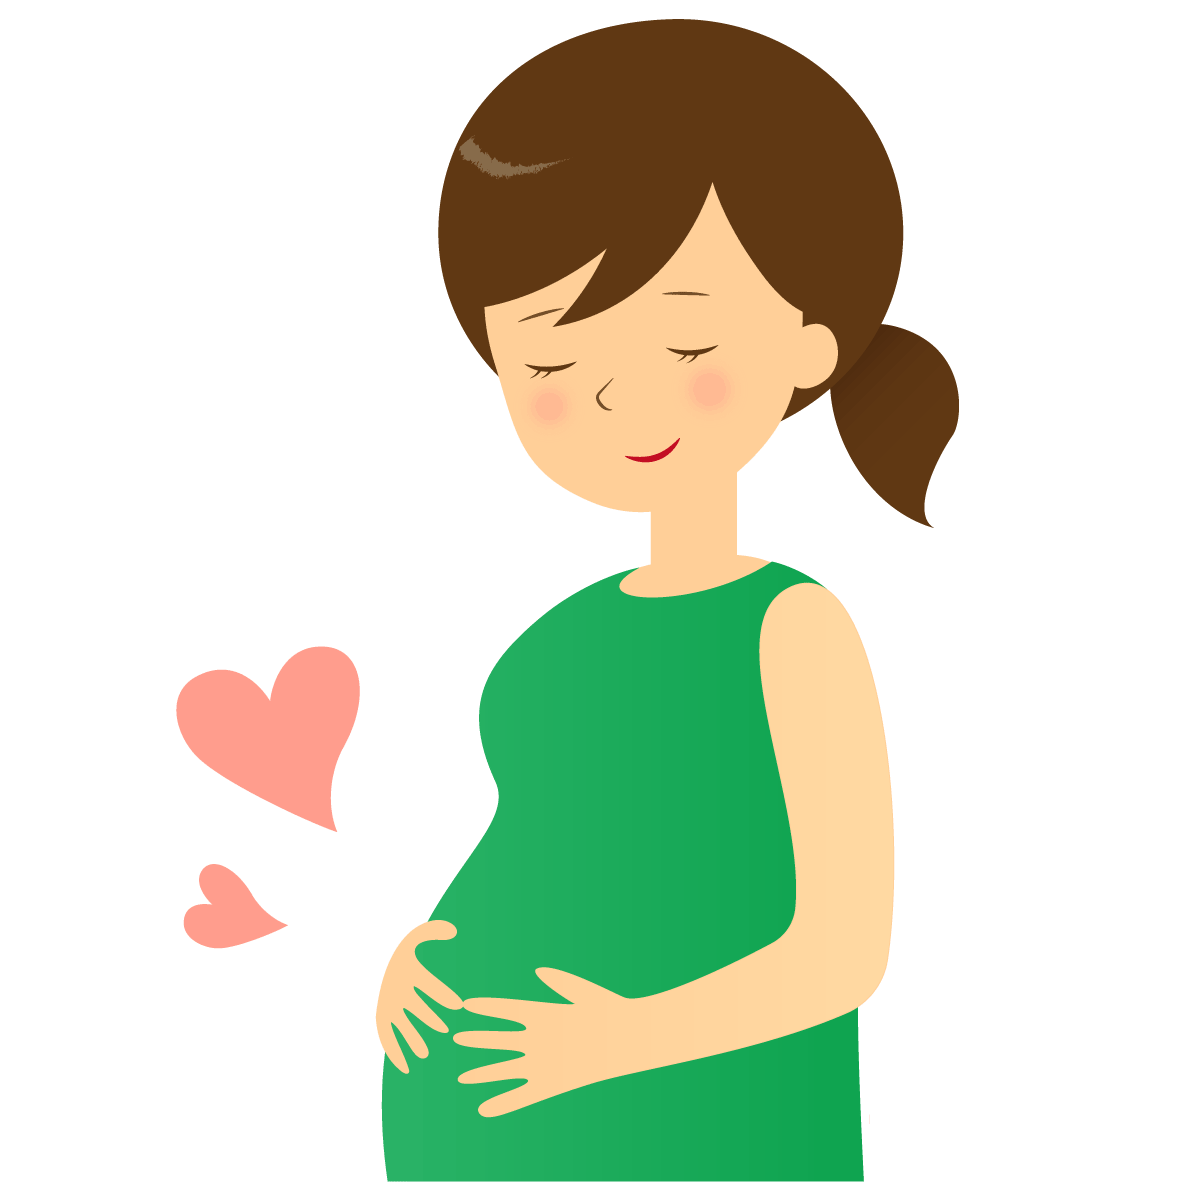 妊婦に対する呼気一酸化窒素を用いた喘息治療を行うと、児の喘息発症を予防する